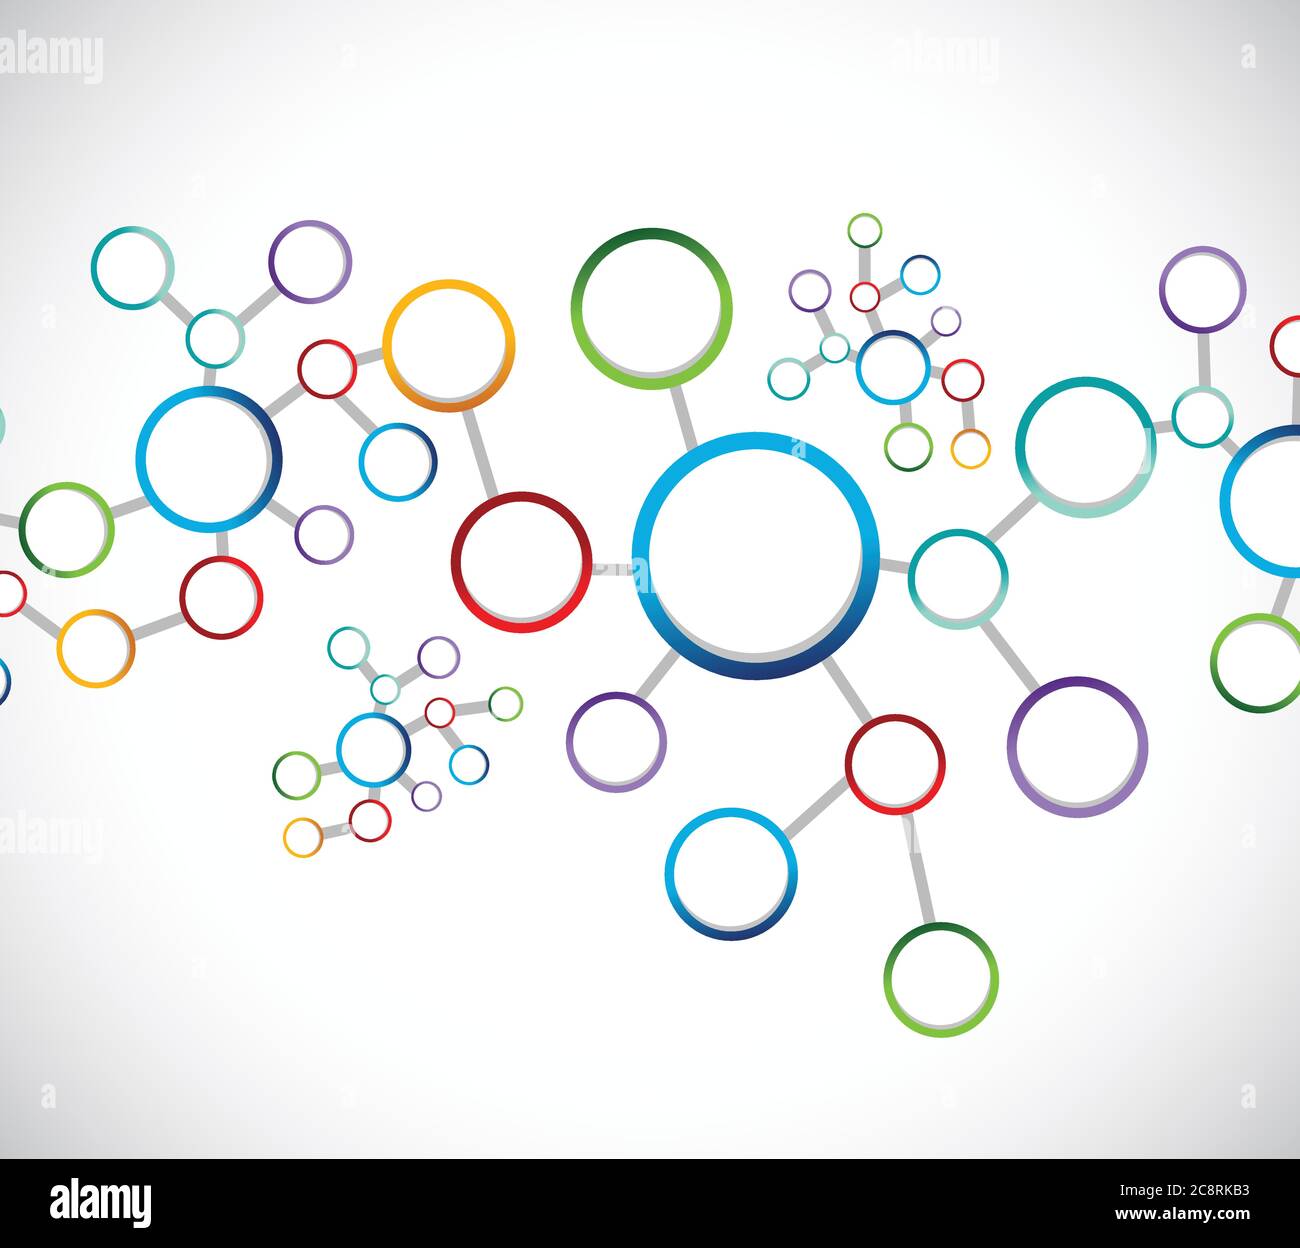 Atome Diagramm Link Netzwerk Verbindung Illustration Design auf einem weißen Hintergrund Stock Vektor